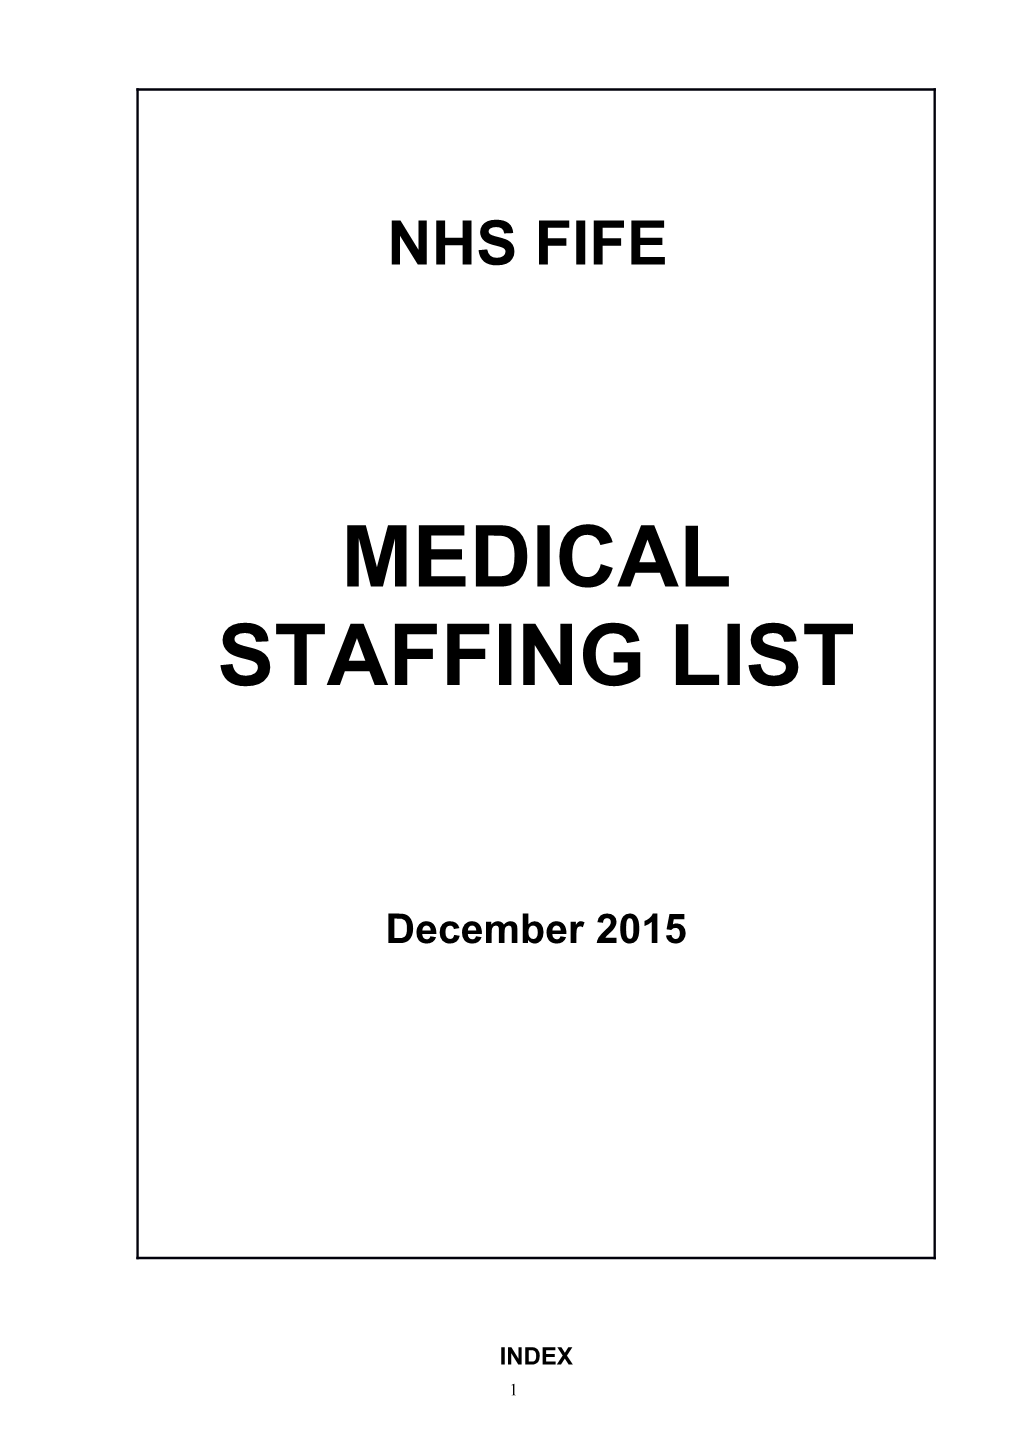 Medical Staffing List